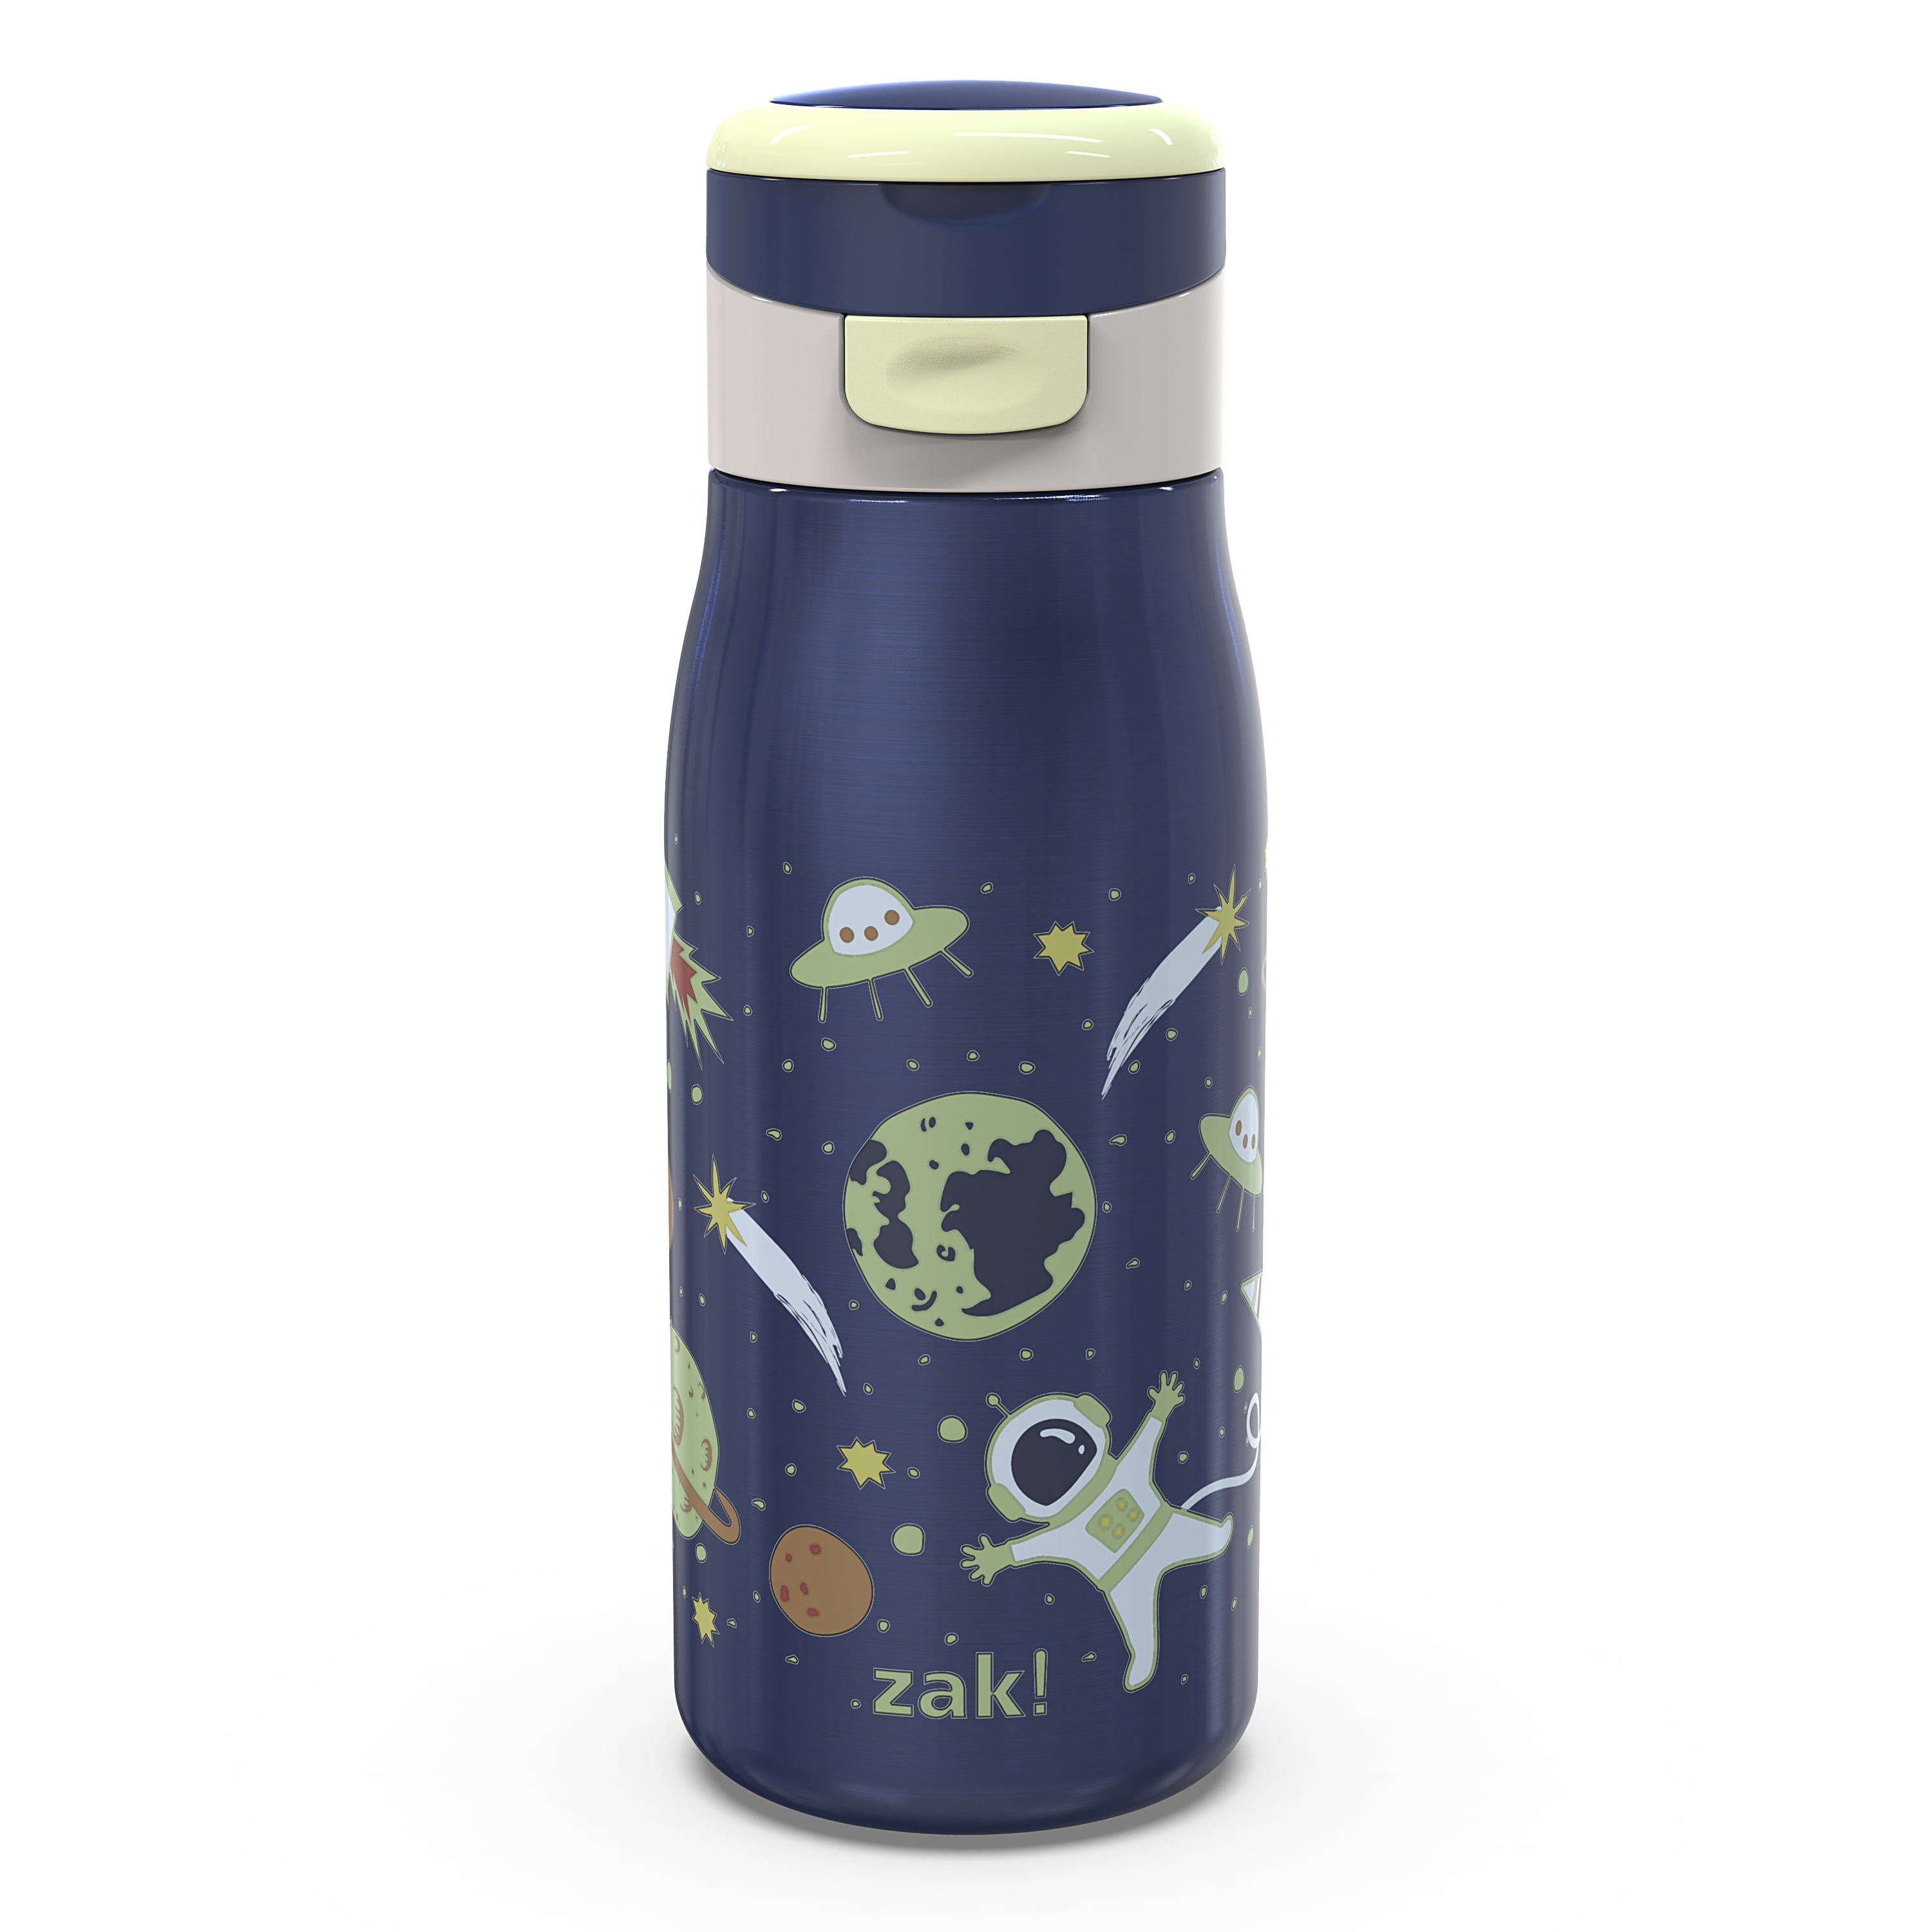 Zak! Designs Charcoal Water Bottle, 28 oz - Baker's